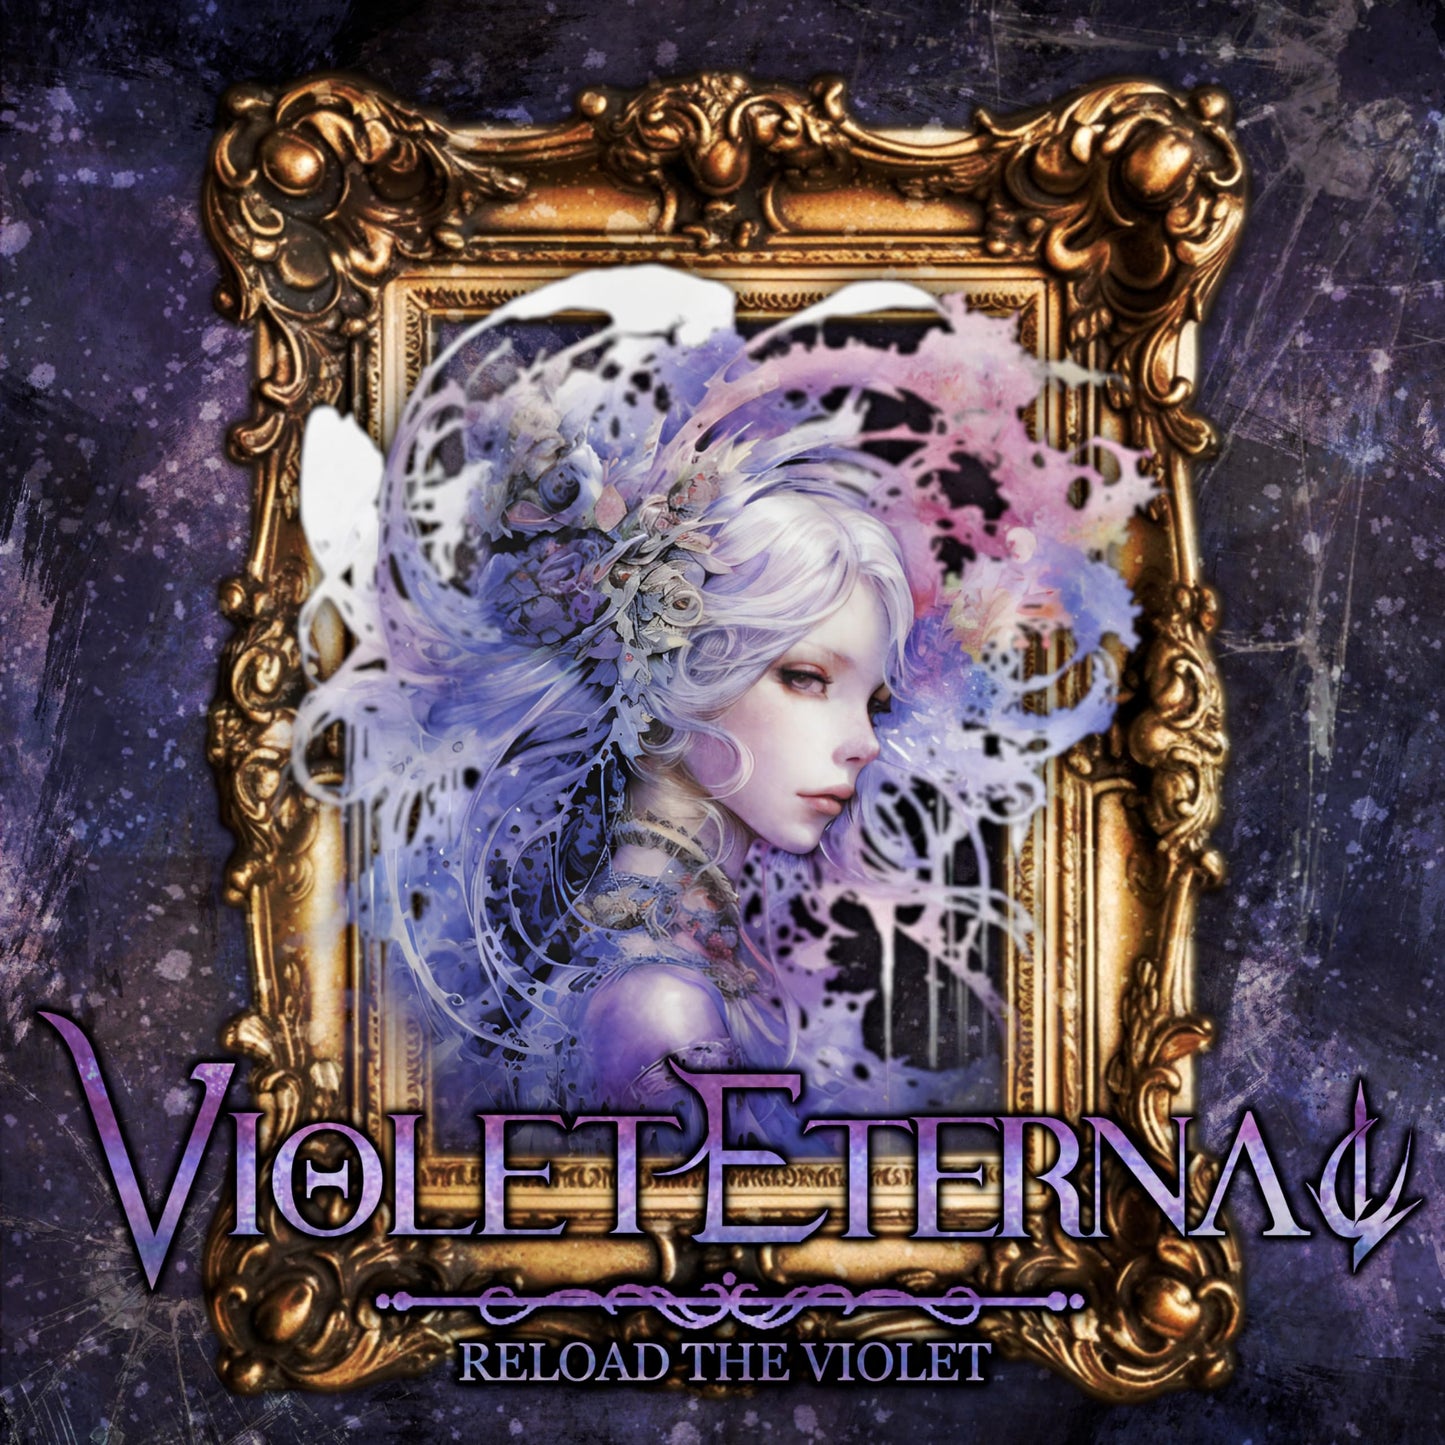 Violet Eternal - Reload The Violet - Import CD